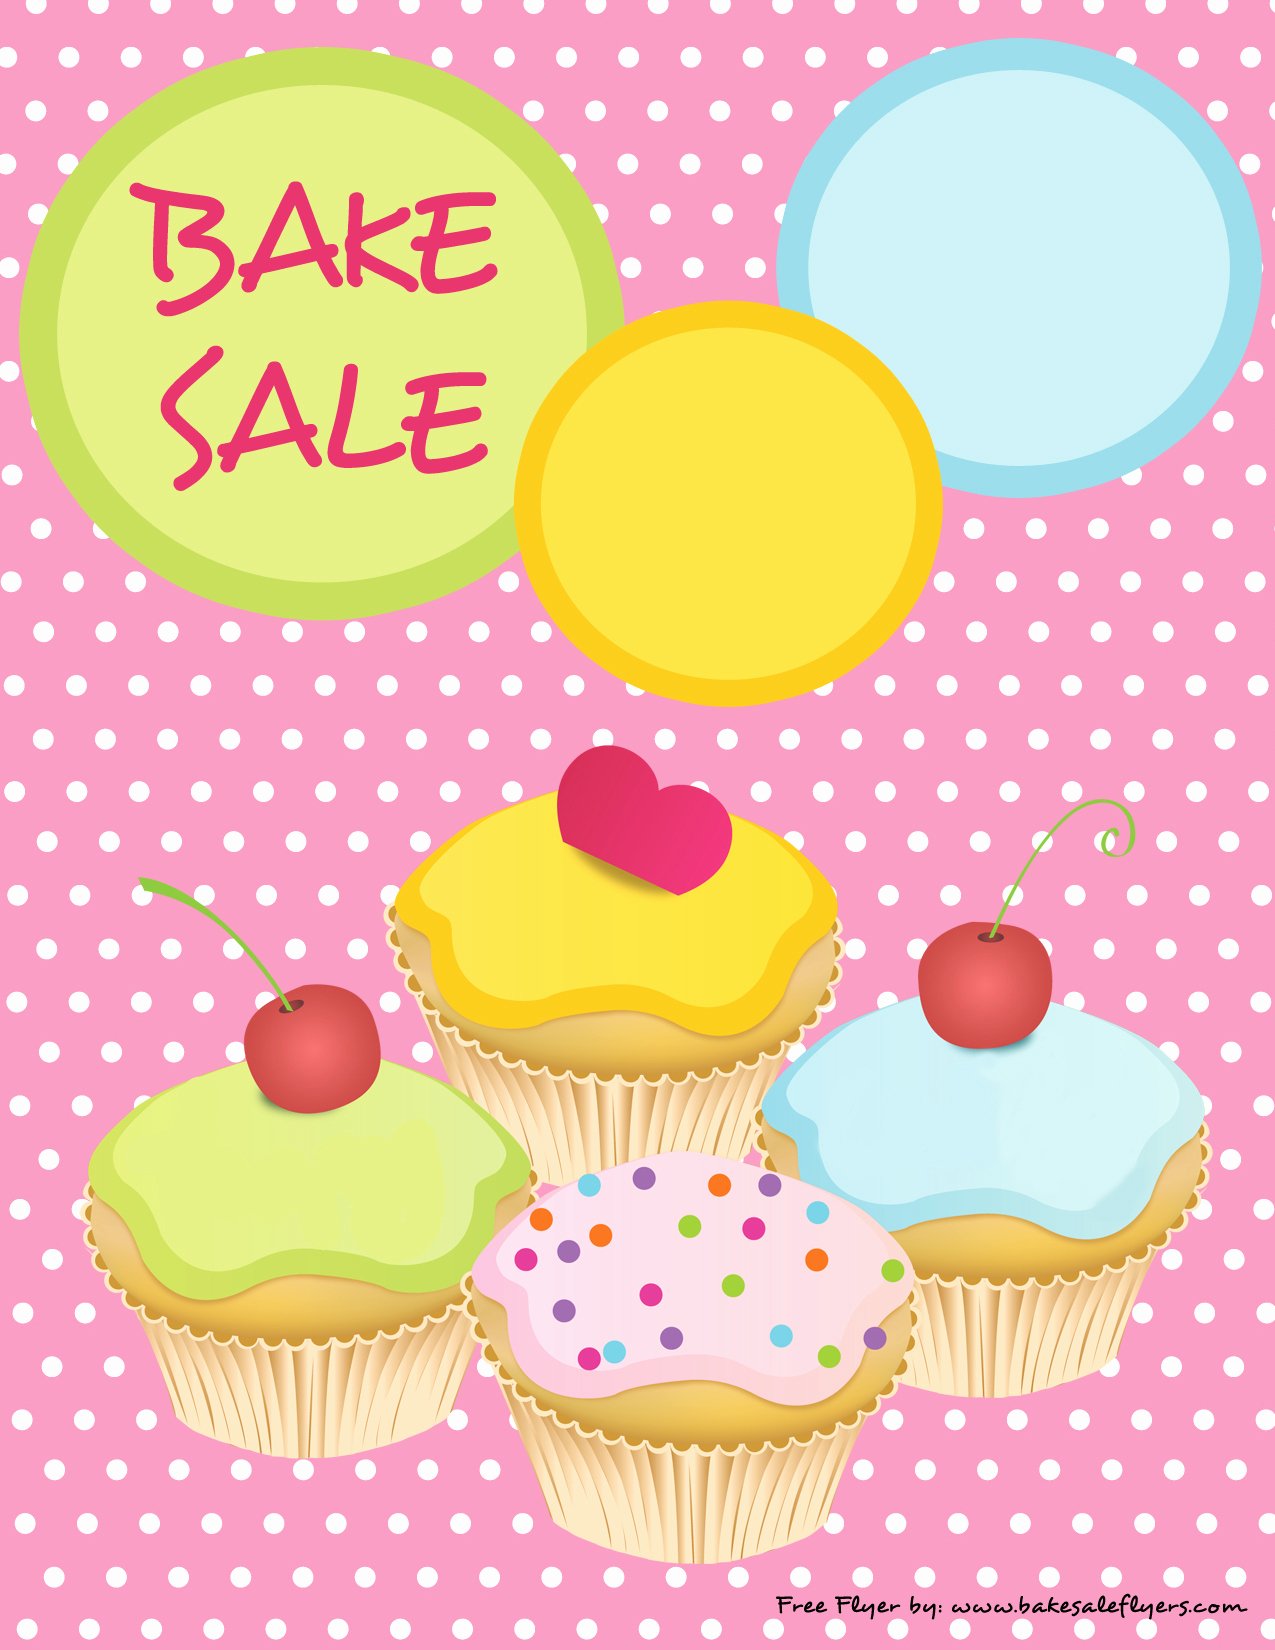 Bake Sale Flyer Template Beautiful Bake Sale Flyers – Free Flyer Designs